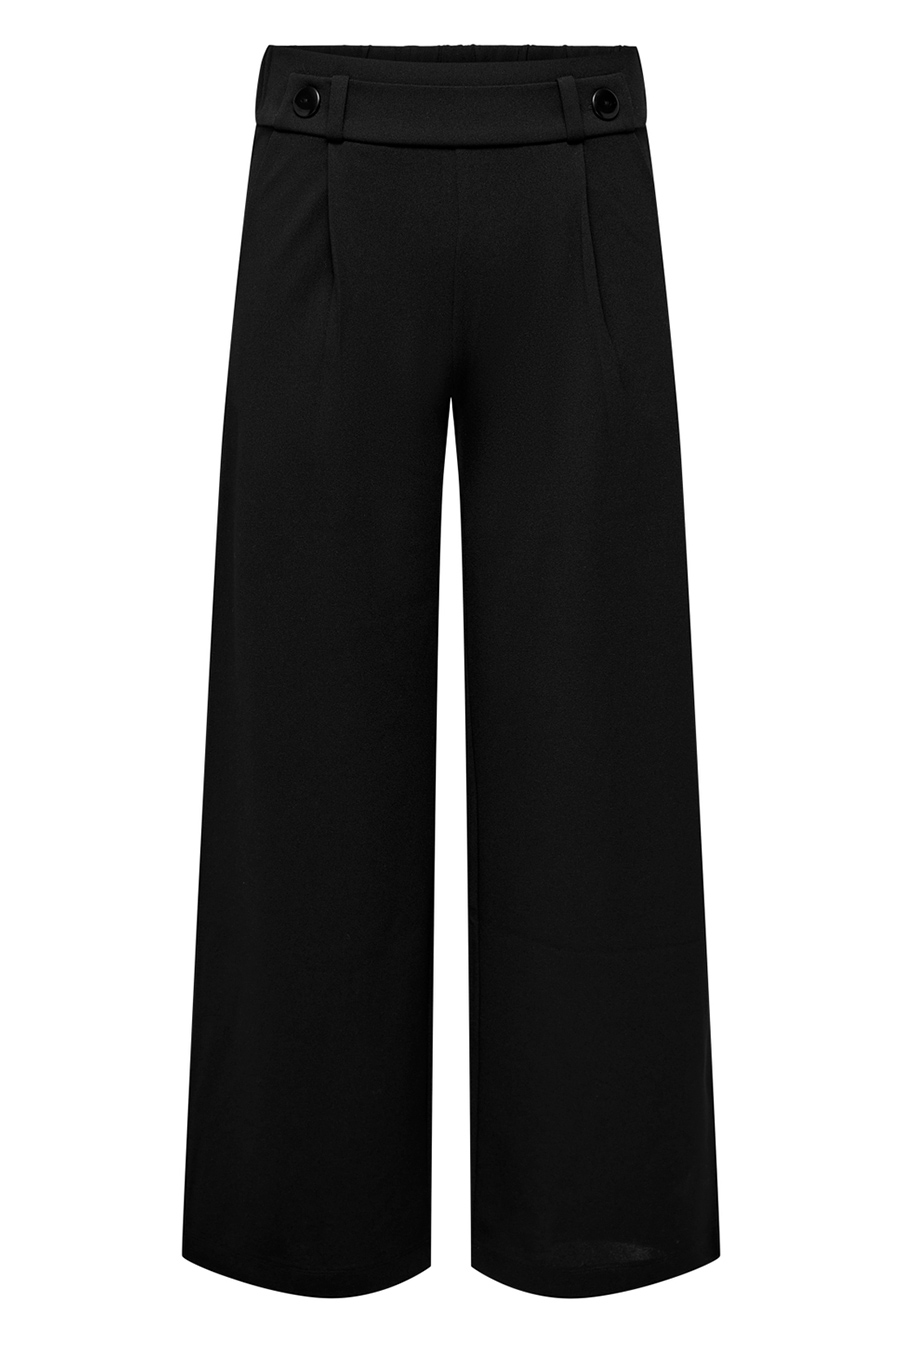 Casual Pants JACQUELINE DE YONG 15208430-Black-BLACK